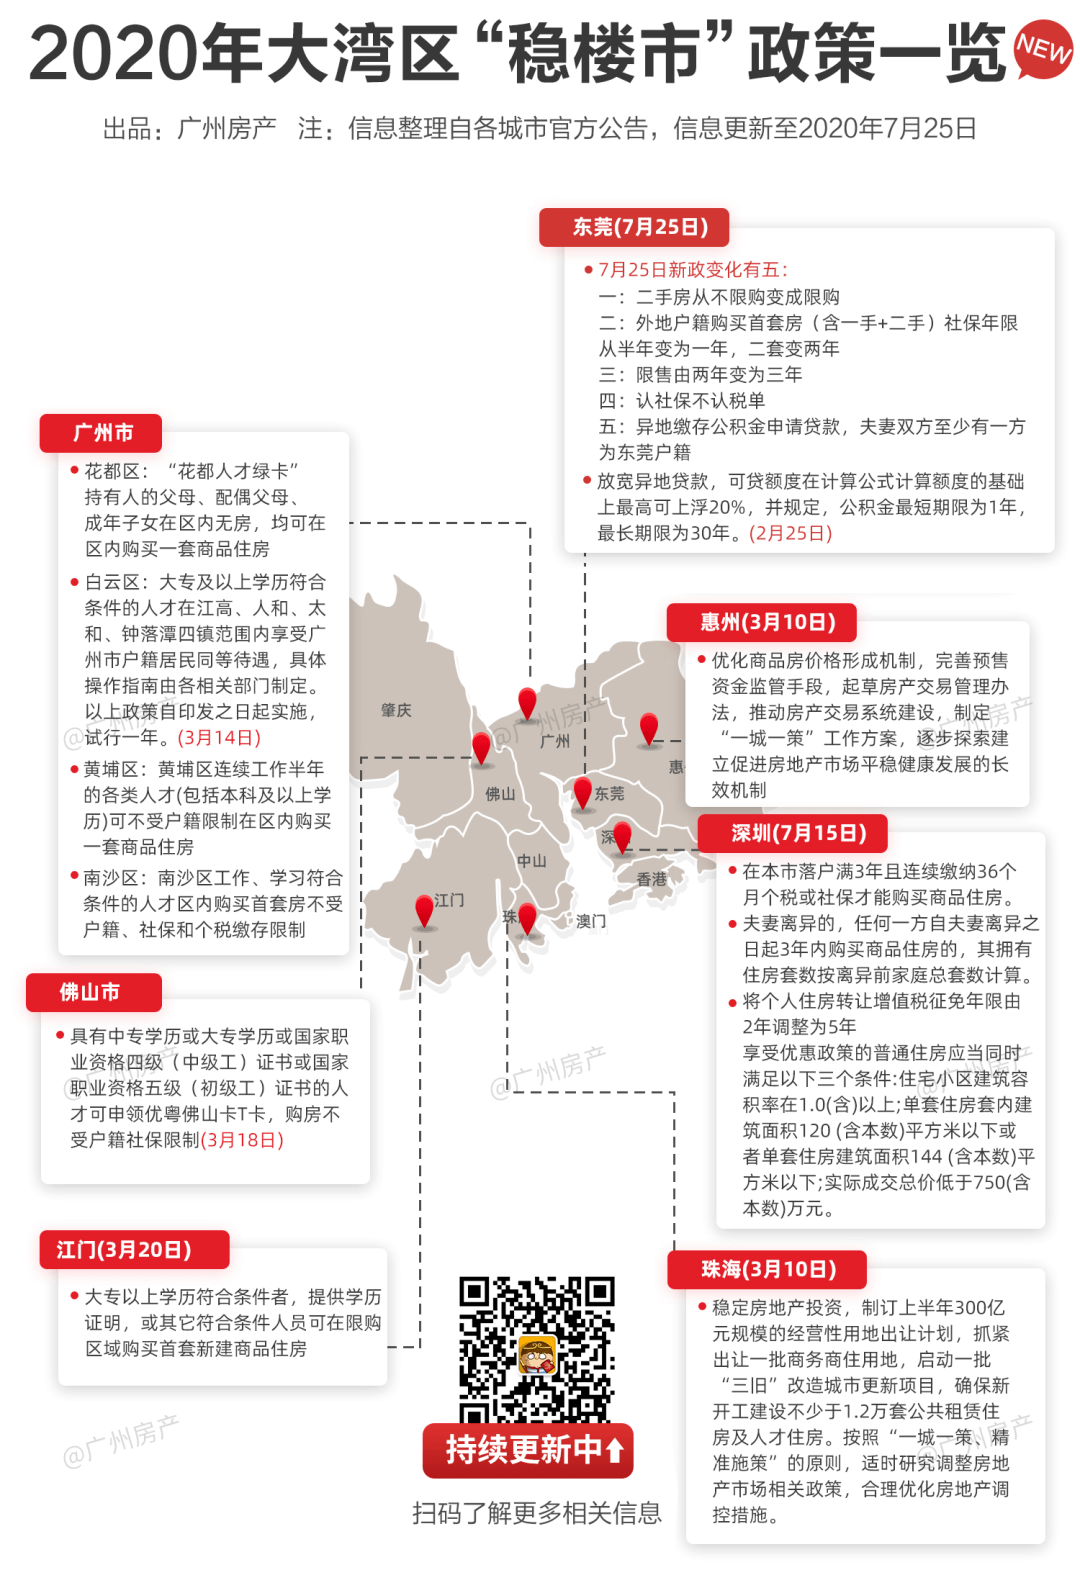 最新最全,大湾区限购限售政策一览,广州机会在哪?